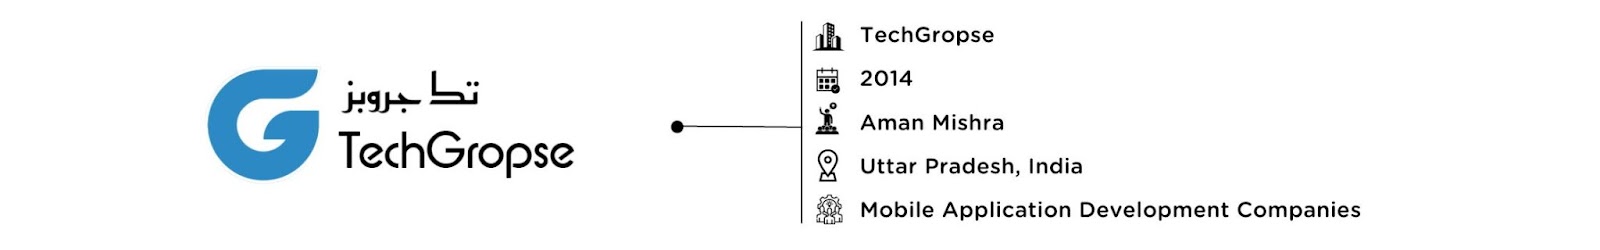 TechGropse : Software Development Company in India